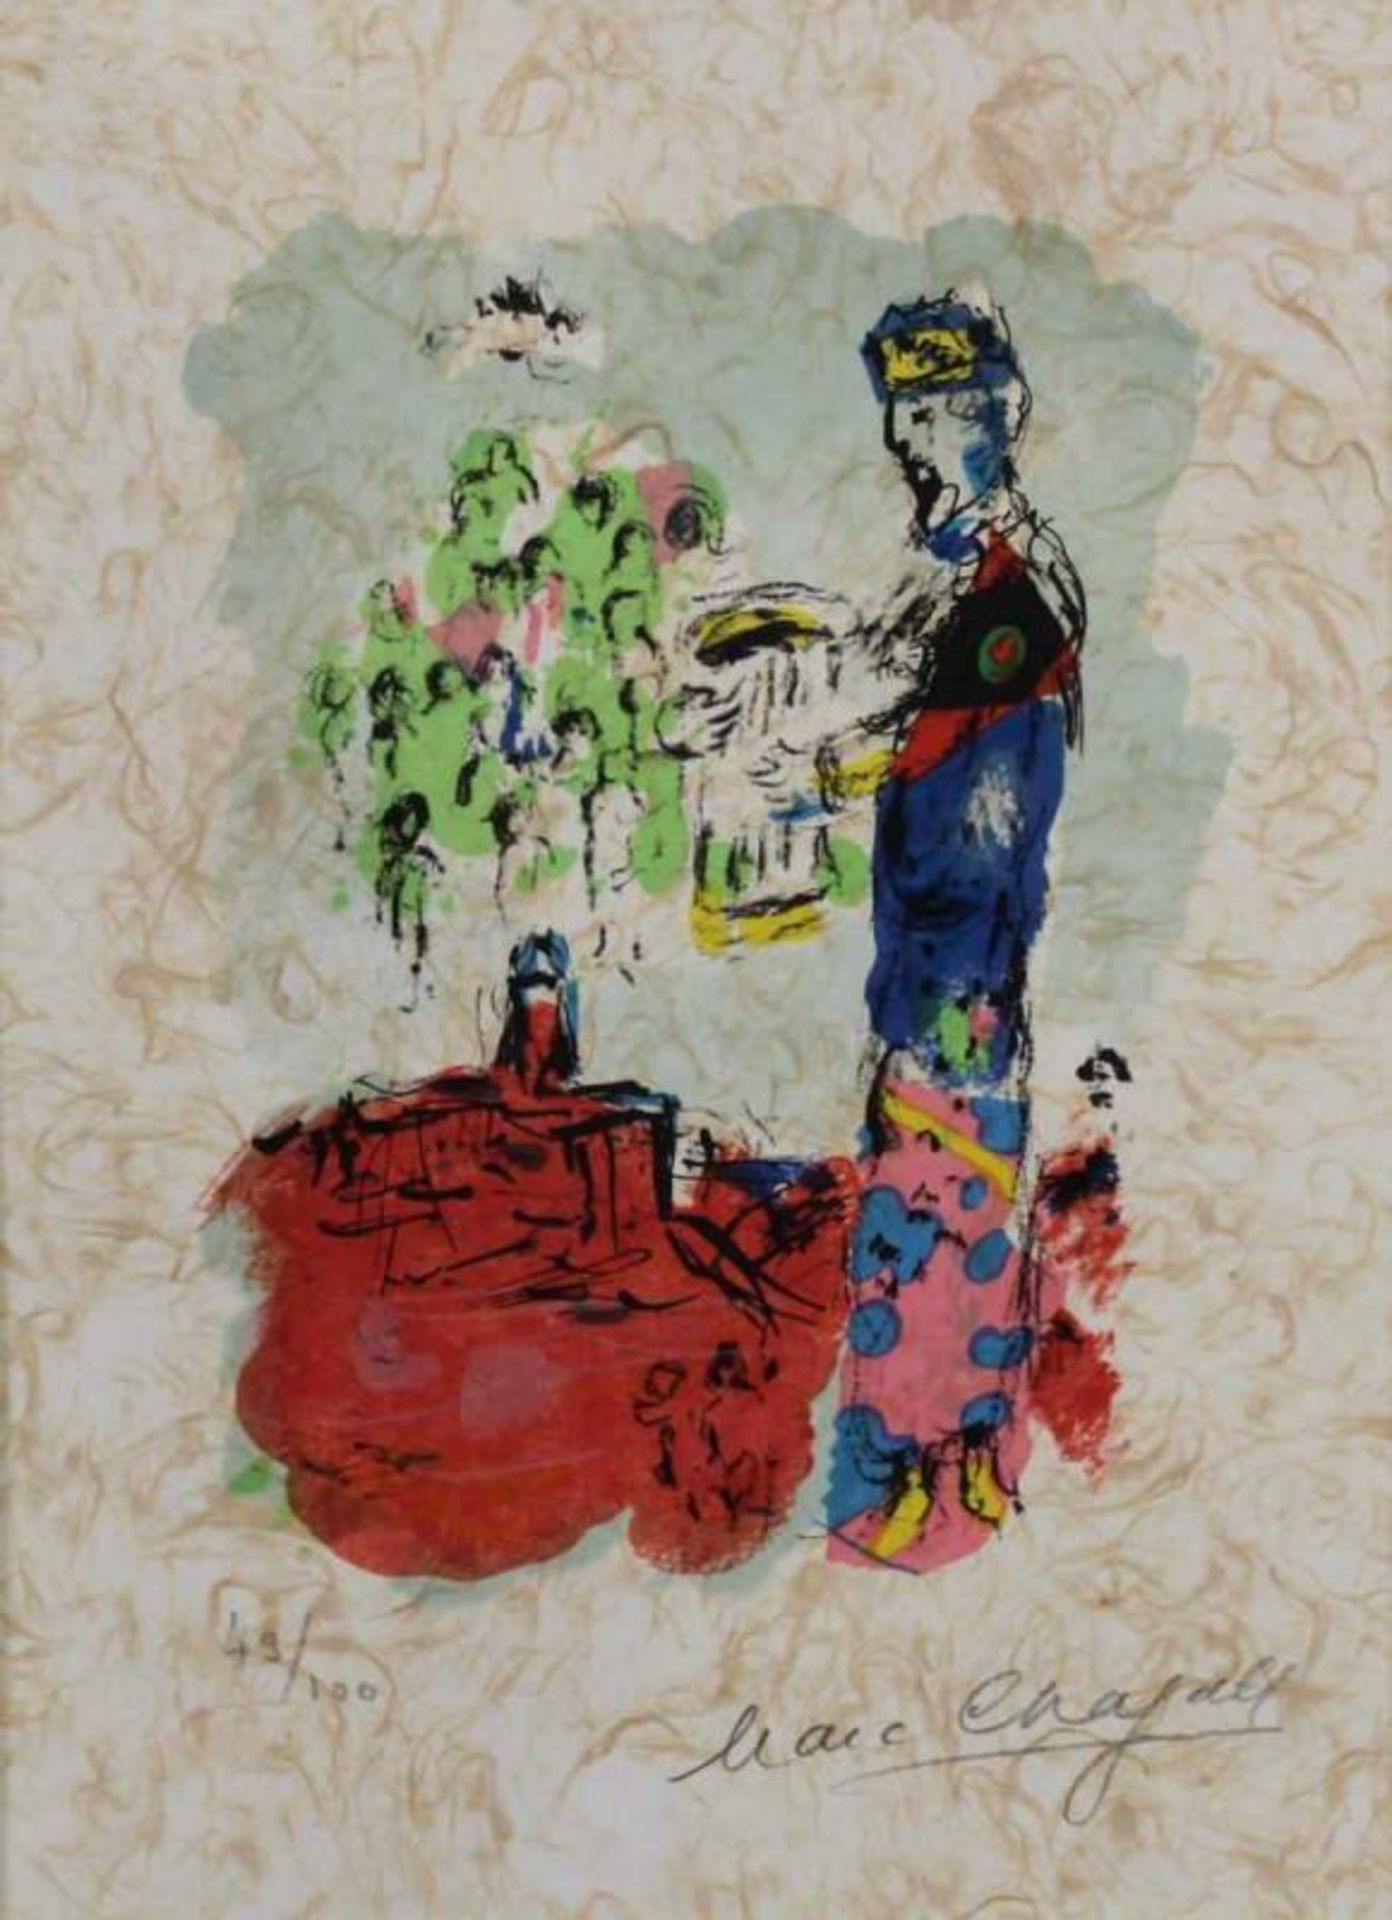 Chagall, Marc (1887 Witebsk - 1985 Saint Paul de Vence), Farblithografie, "La Tour de David (